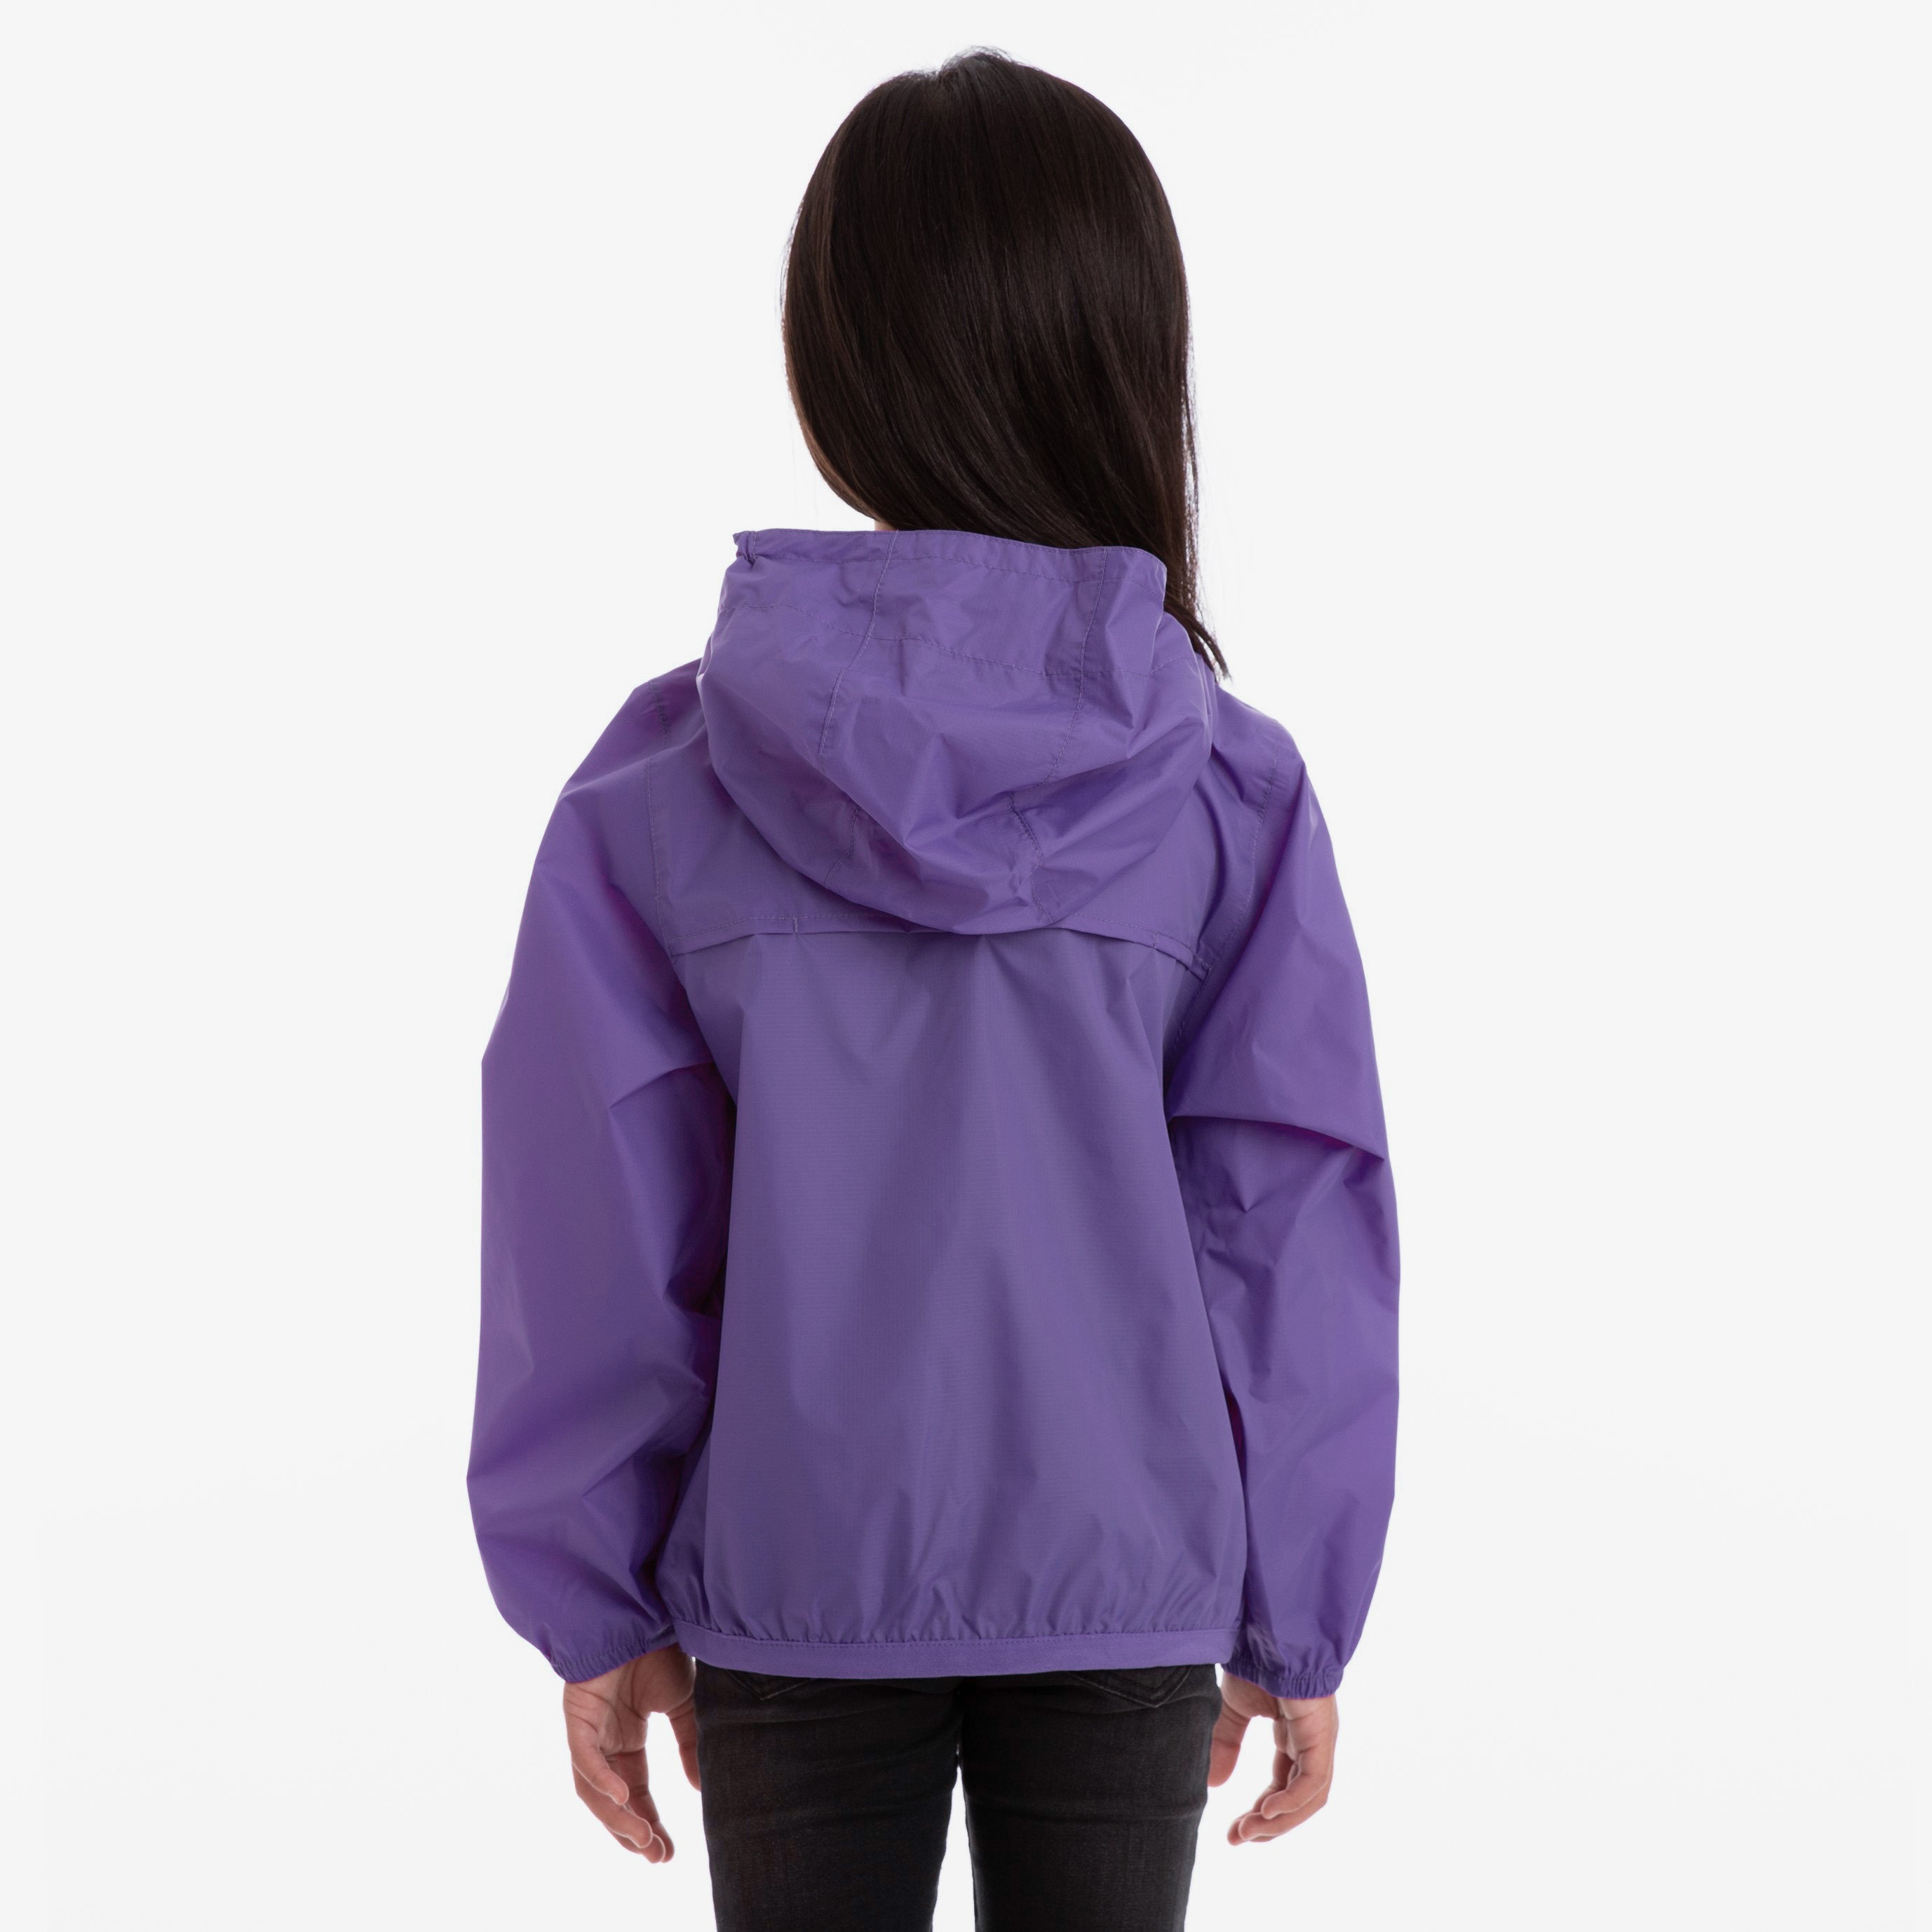 Claude - Kids Packable Full Zip Rain Jacket in Violet